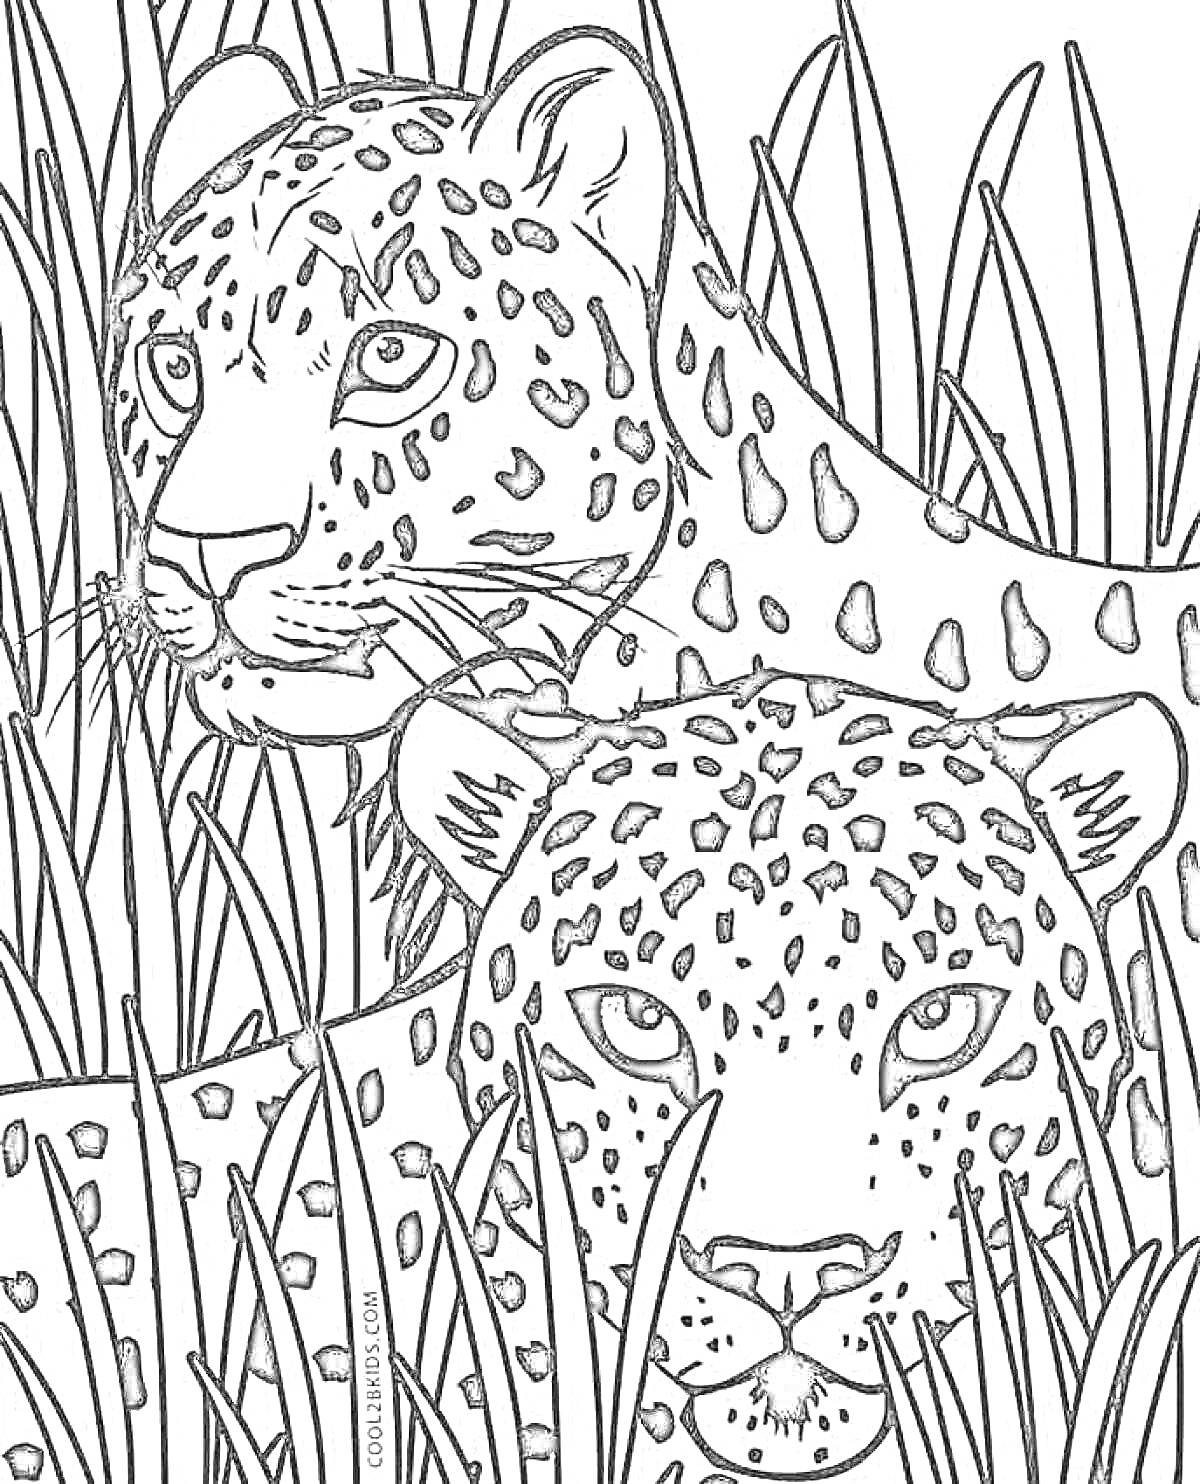 РаскраскаДва дальневосточных леопарда среди травы